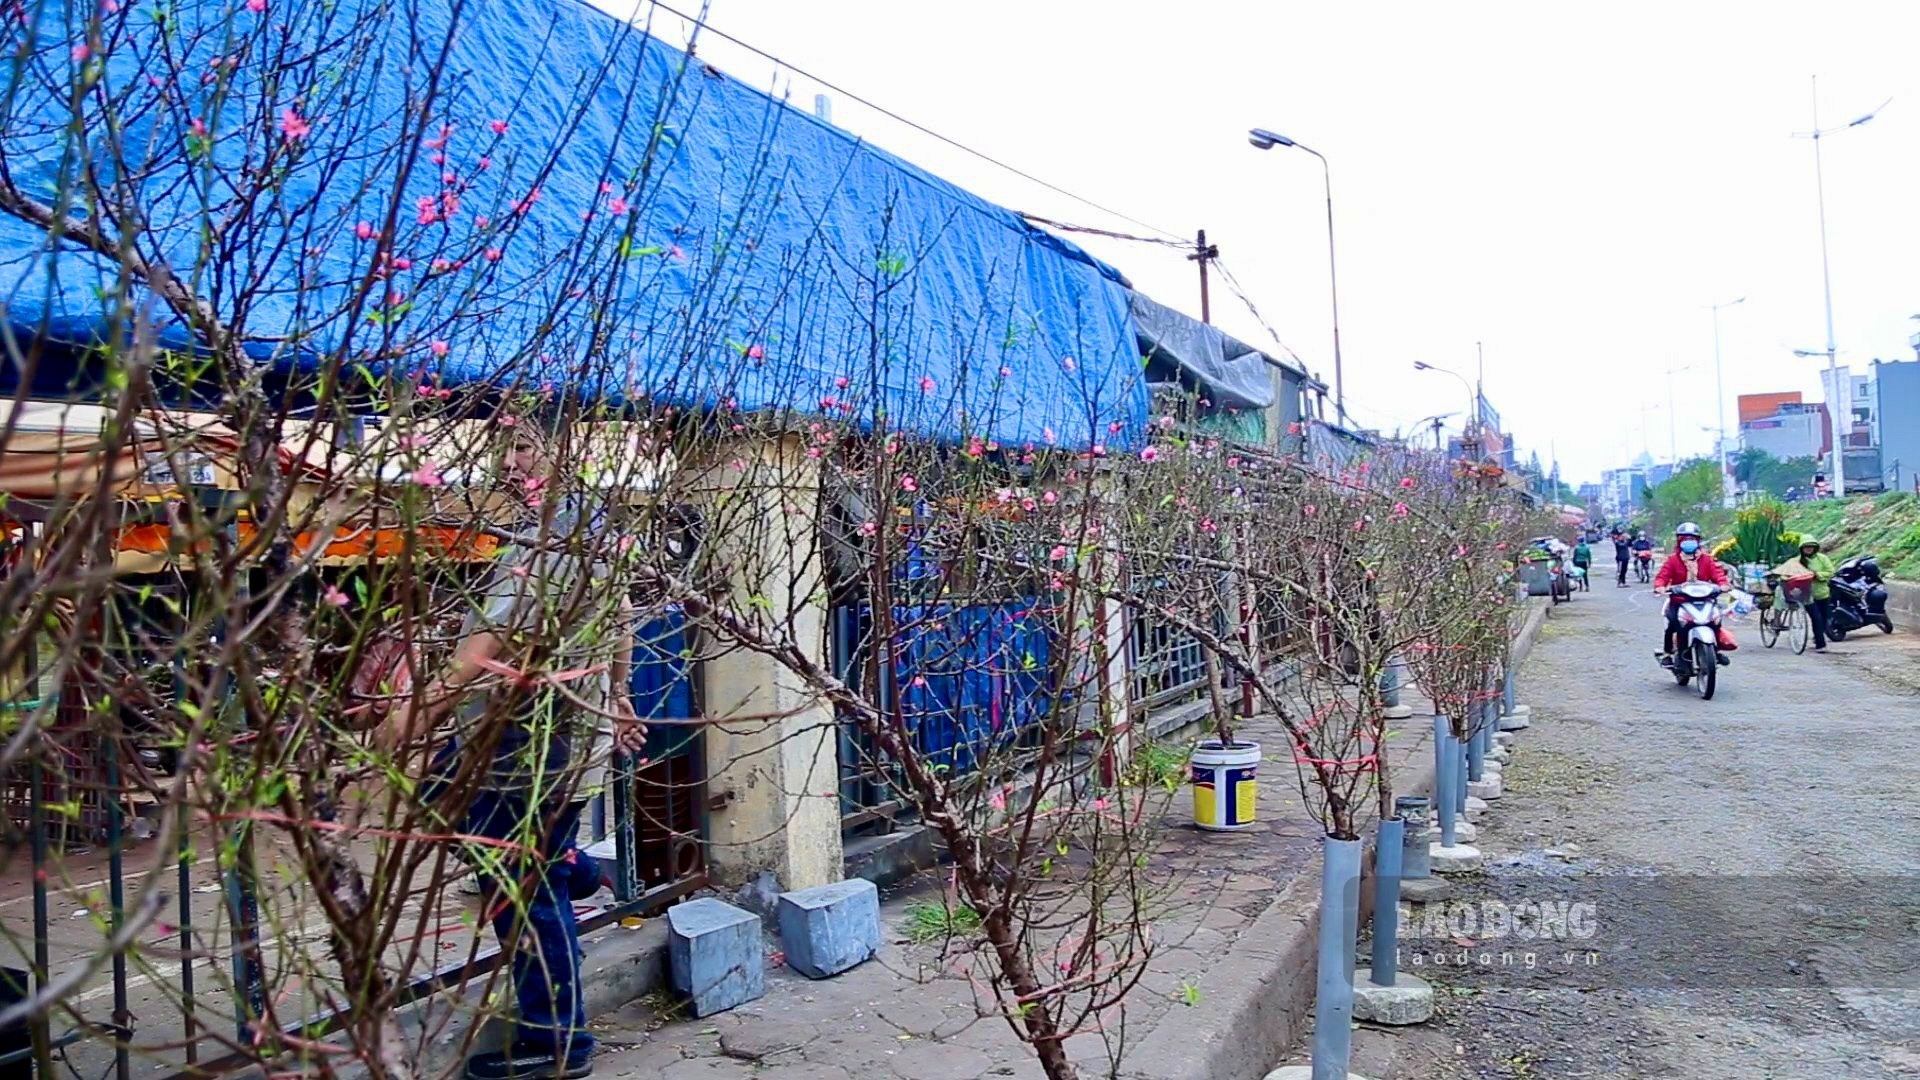 Mặc dù còn hơn một tháng nữa mới đến Tết nguyên đán nhưng những cành đào Nhật Tân đã bắt đầu khoe sắc và được bày bán dọc chợ hoa Quảng An (quận Tây Hồ, Hà Nội), phục vụ nhu cầu chơi hoa sớm của người dân Thủ đô.